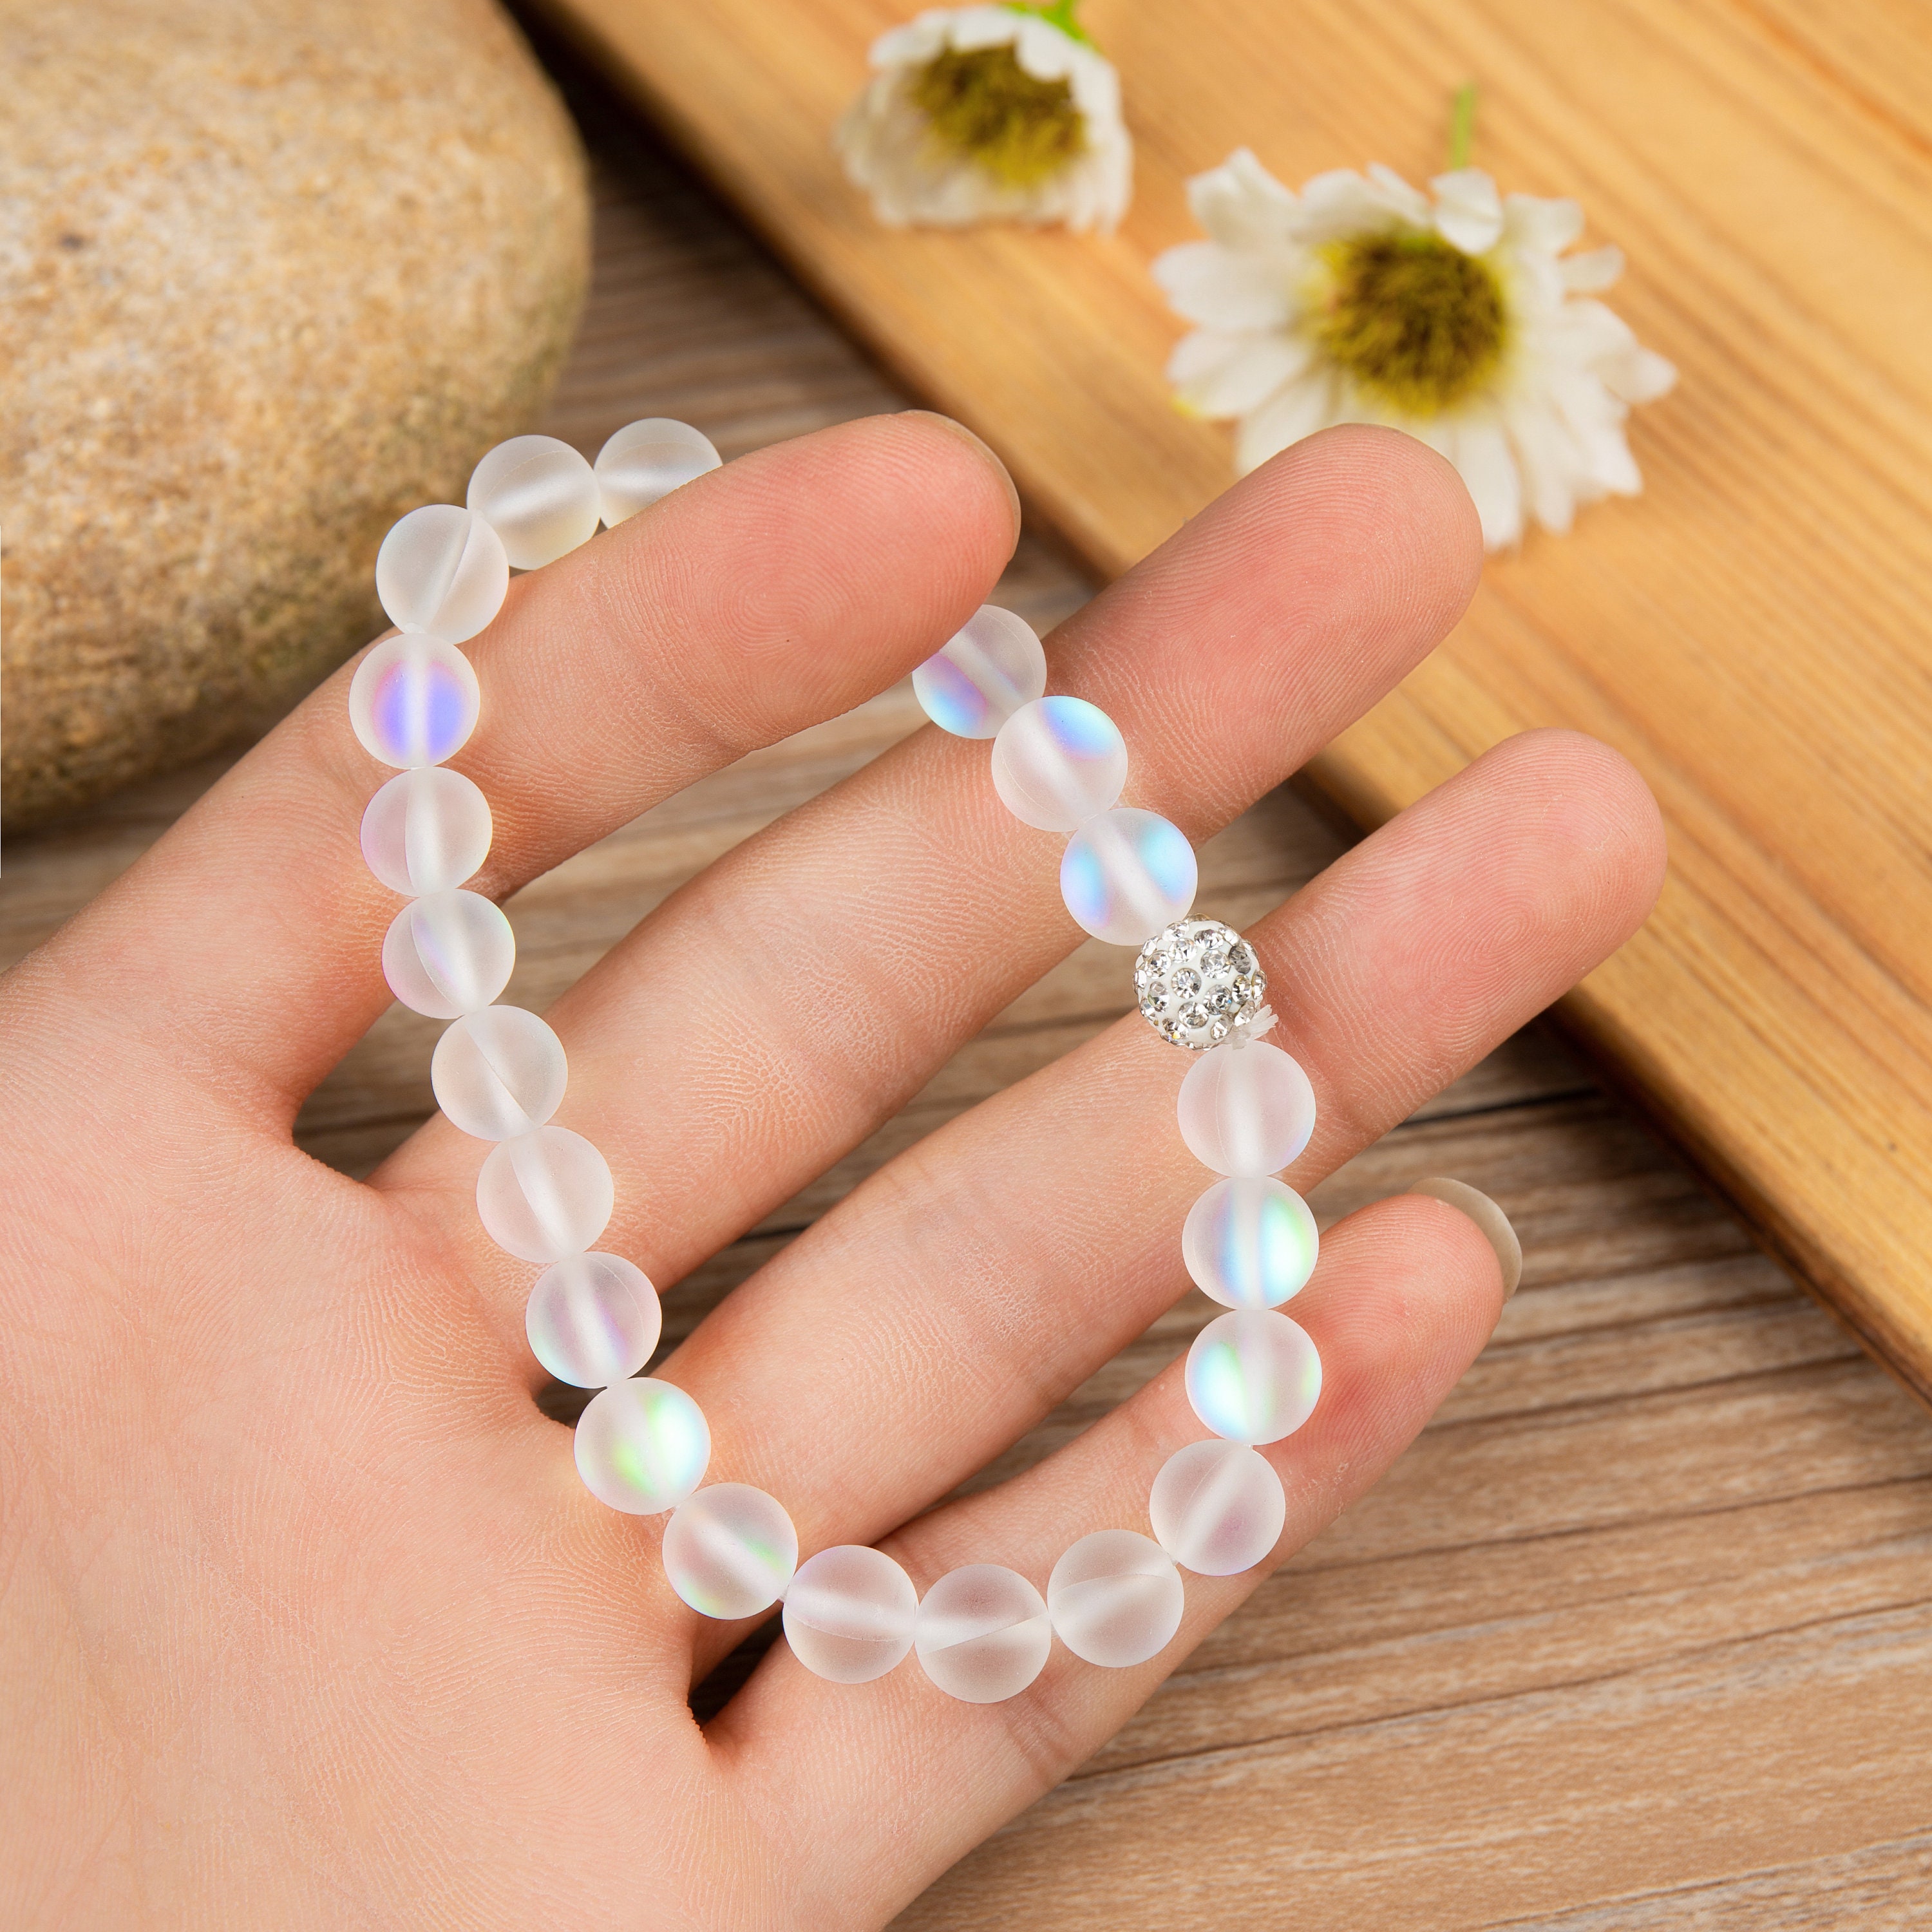 8mm Cristal Pierre de lune perles naturelles bracelet Vo 9H 